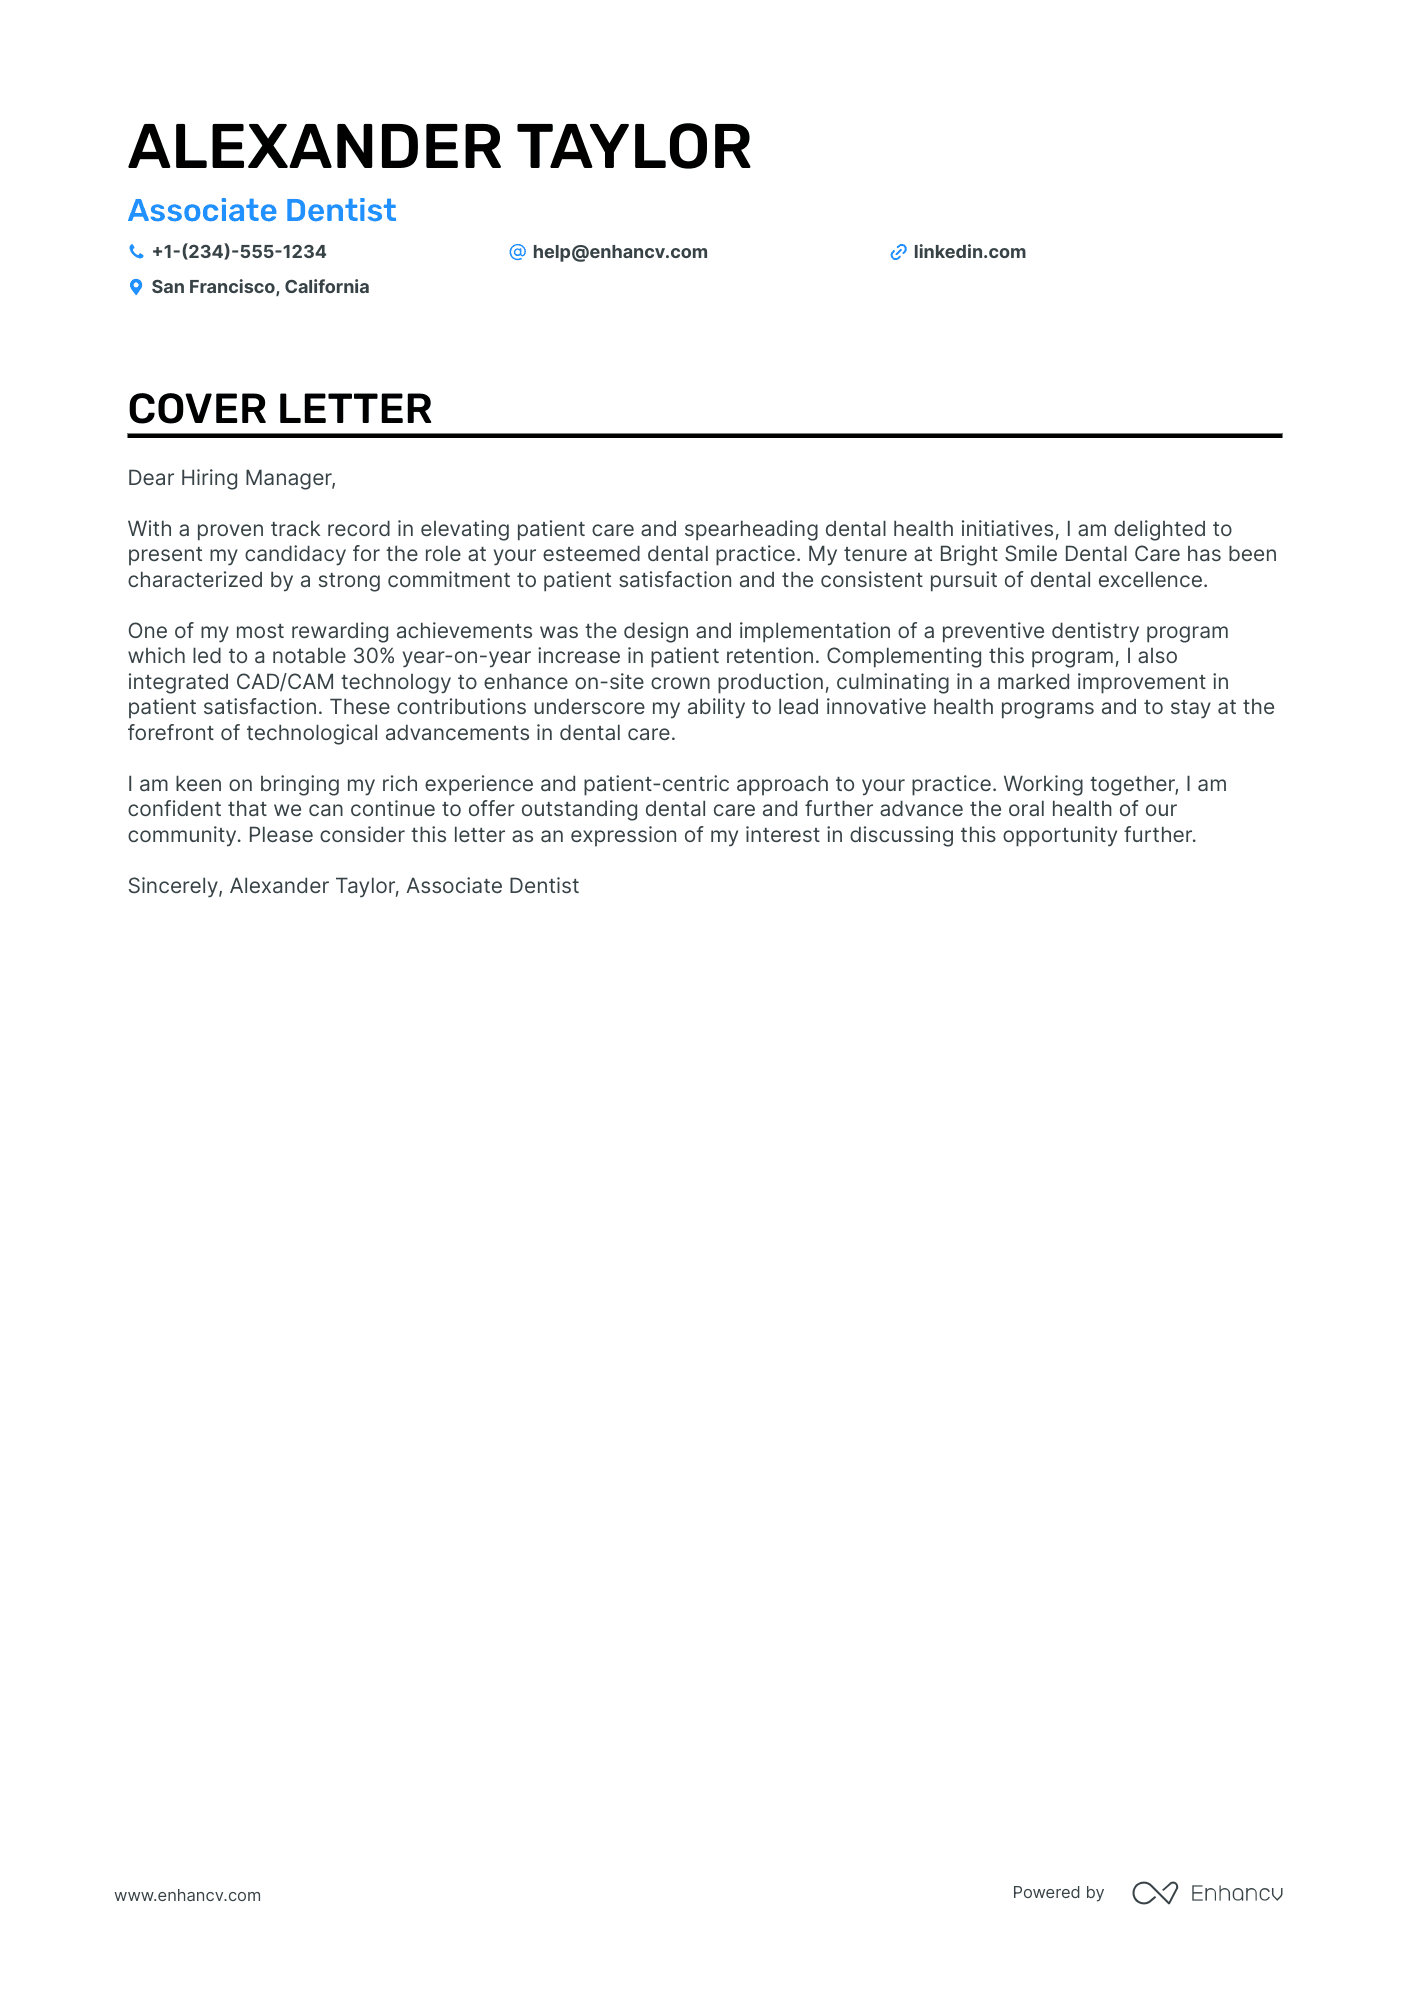 cover letter for dental position